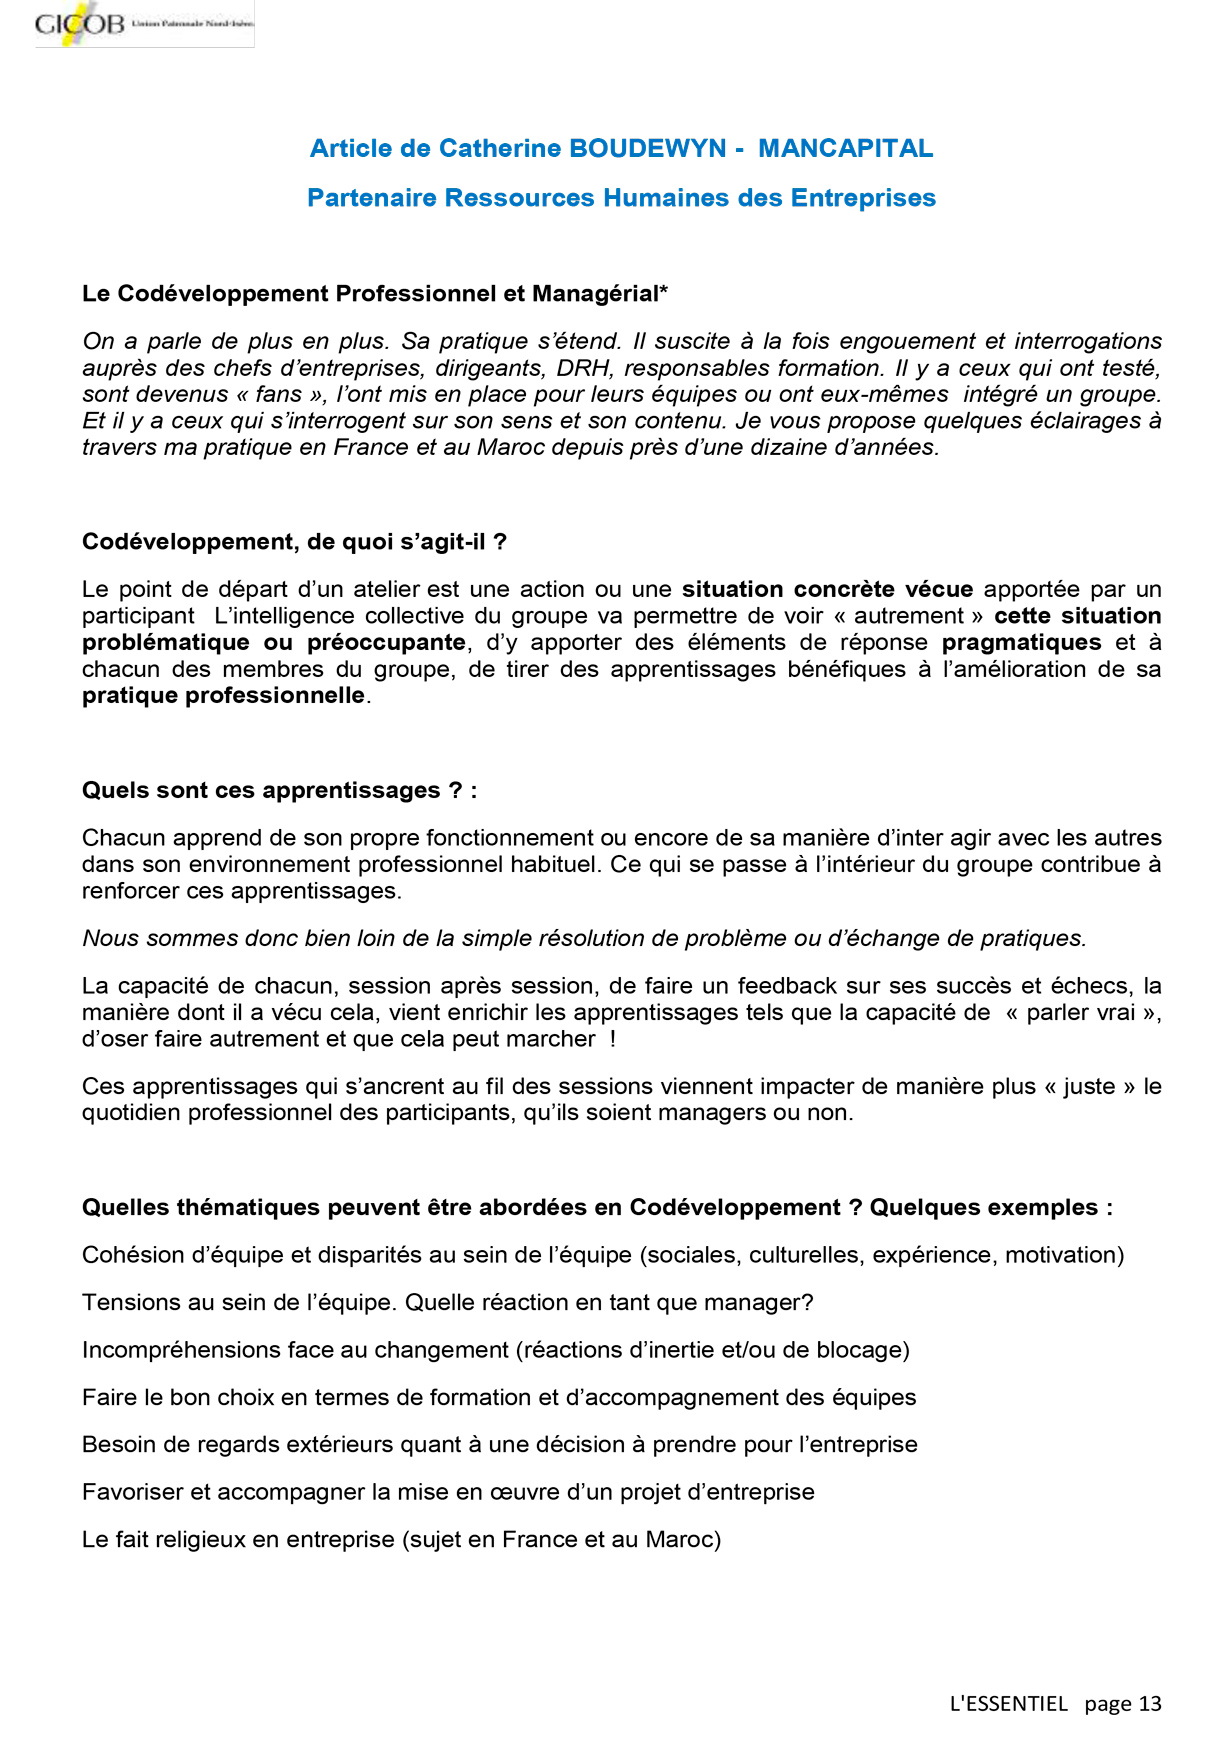 Codéveloppement professionnel, comment ça marche ? (septembre 2016) GICOB Union Patronale Nord-Isère